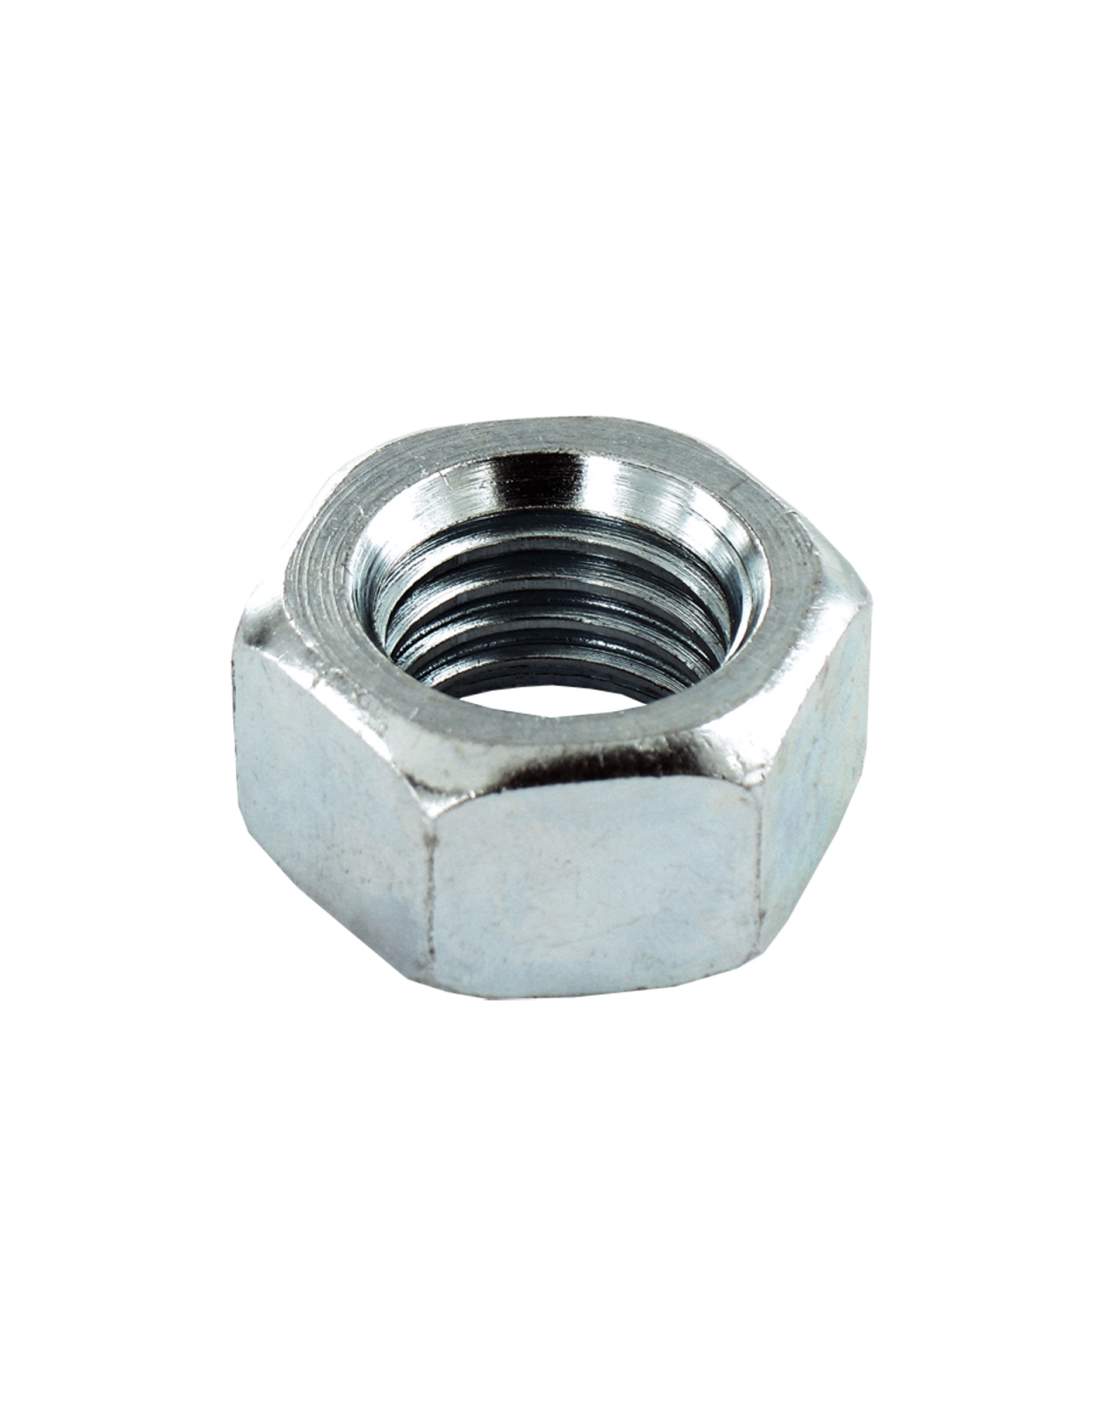 Hexagonal nut in galvanized steel, diameter 18mm, 2 pcs.